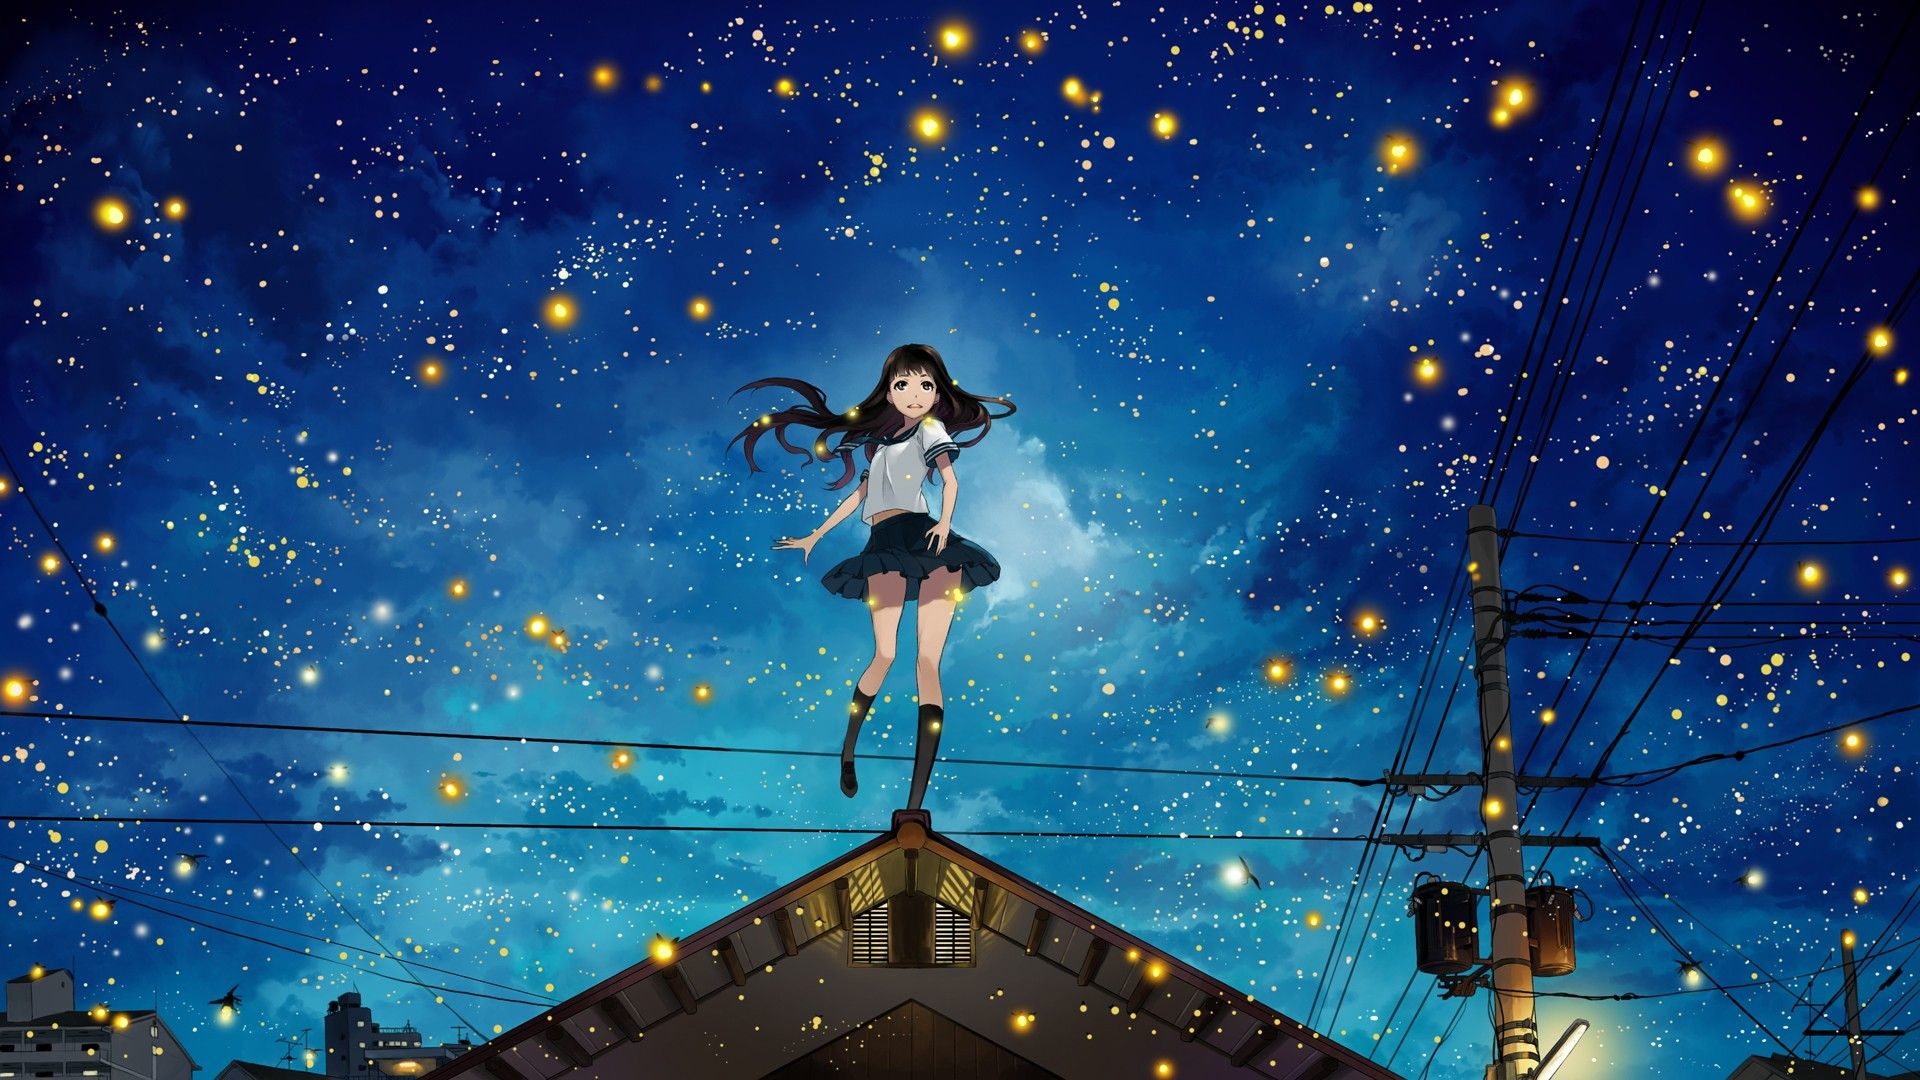 1920x1080 Anime Girls at Night Sky HD Wallpaper. Â« Â»